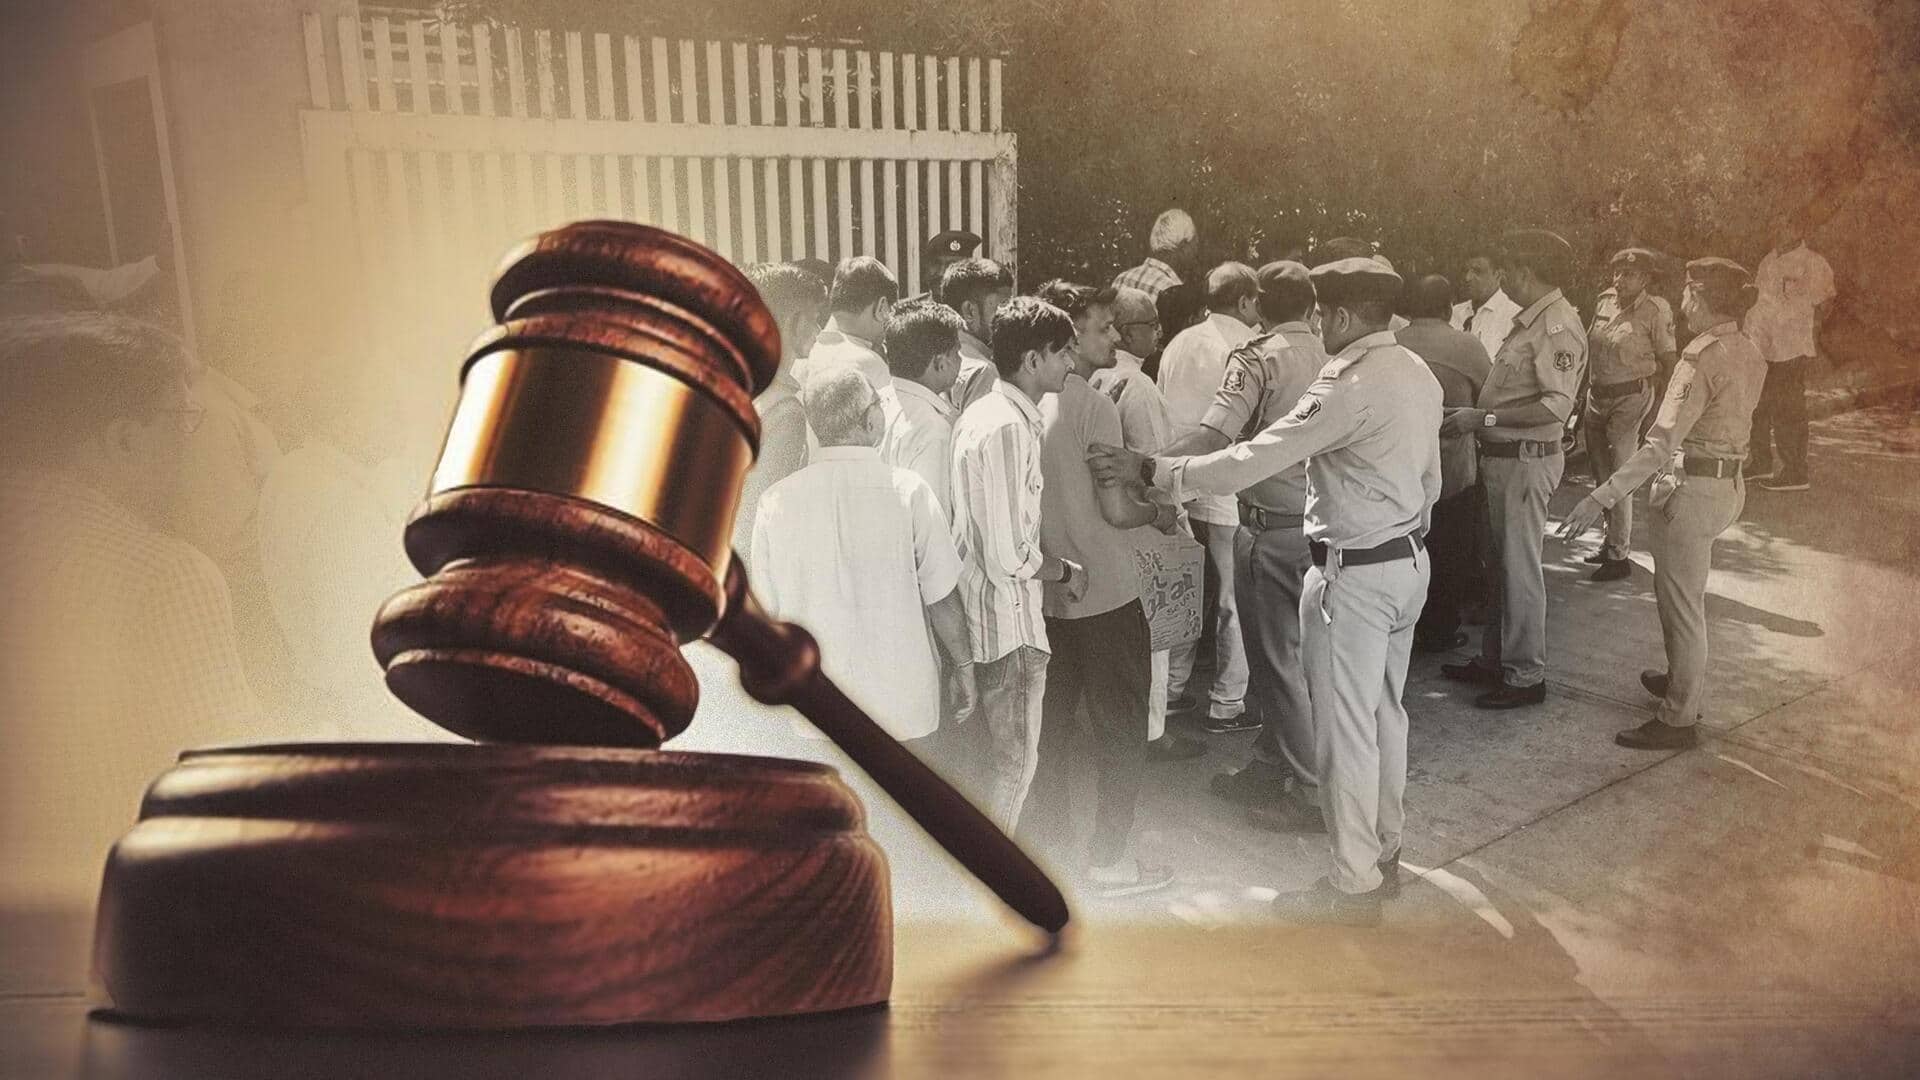 गुजरात दंगे: नरौदा गाम नरसंहार के सभी 68 आरोपी बरी, जानें पूरा मामला 